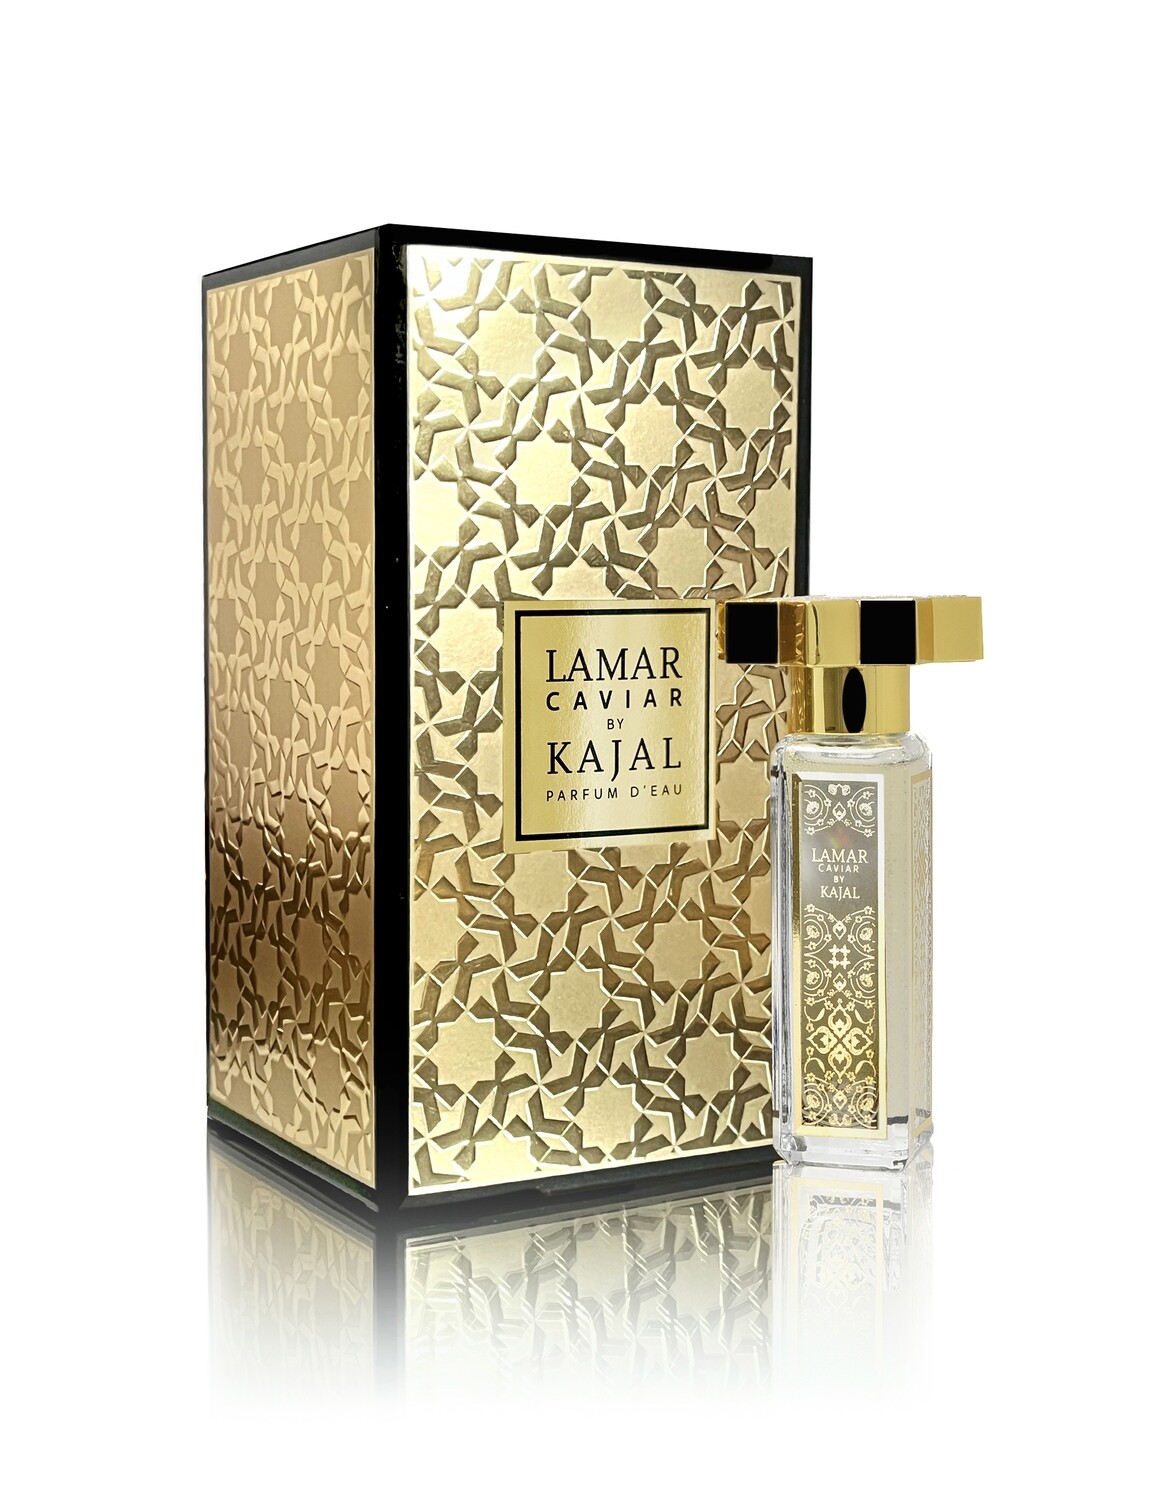 LAMAR CAVIAR - Kajal Perfumes - 30ml Perfume D'eau / 1ml